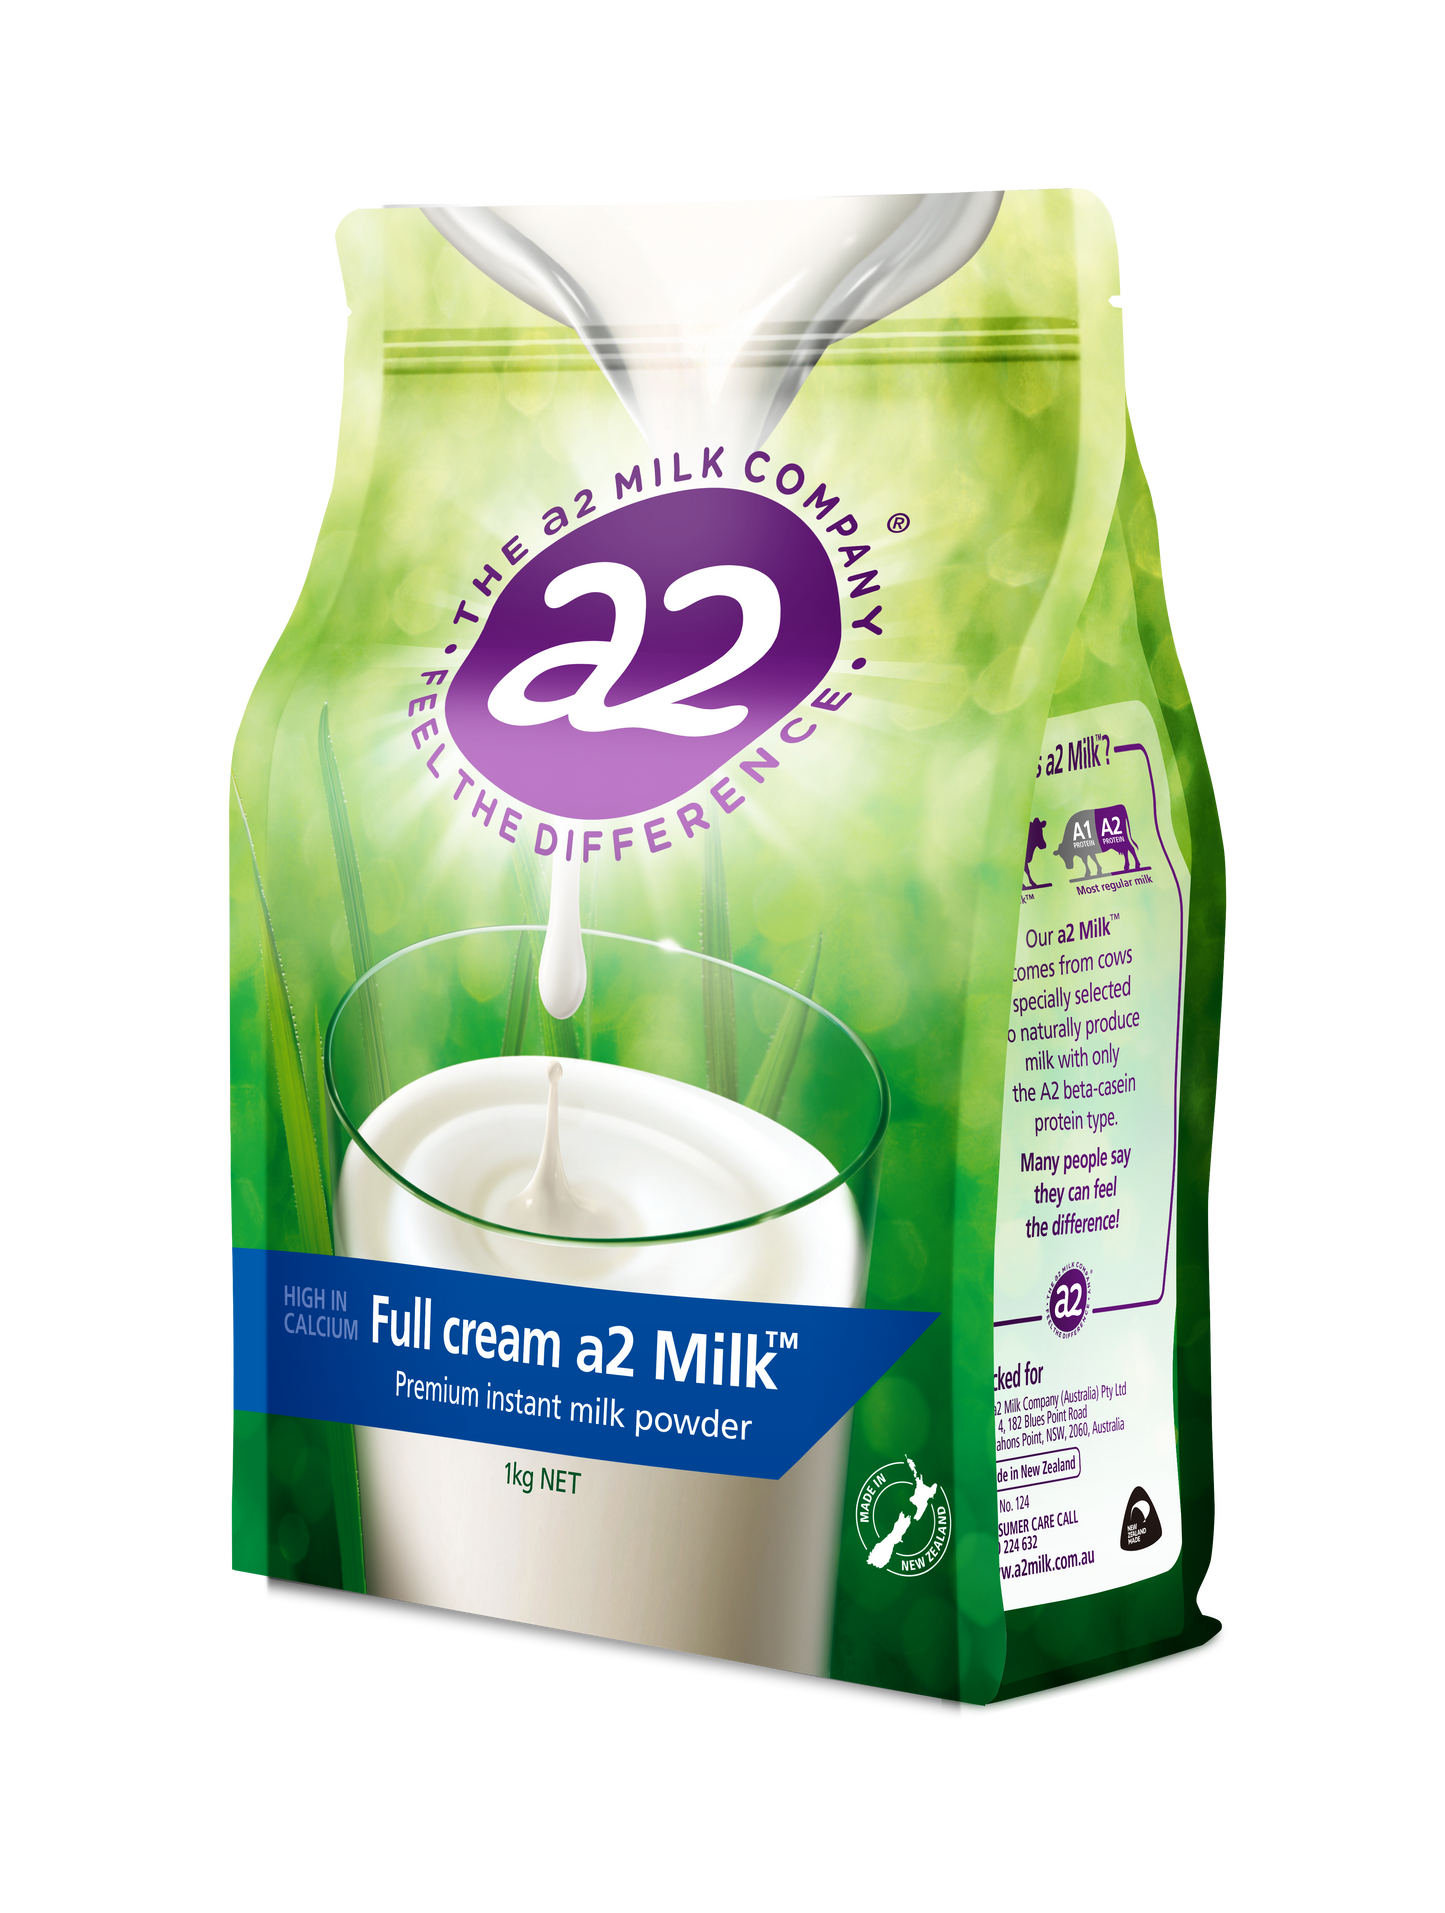 Full cream a2 Milk® Premium instant milk powder 1kg